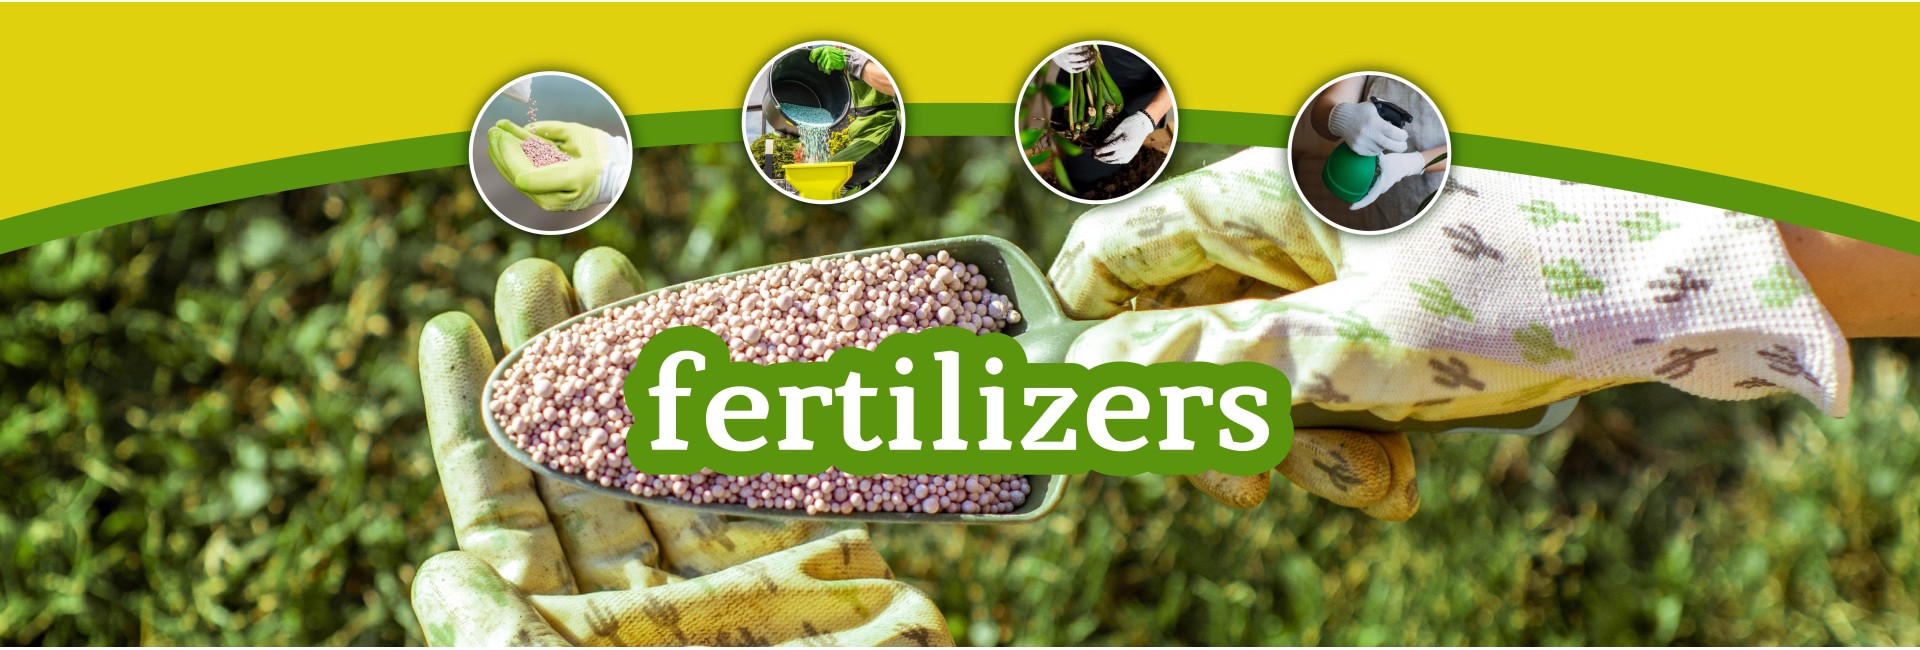 fertilizers for plants flowers, garden, fruits, vegetables